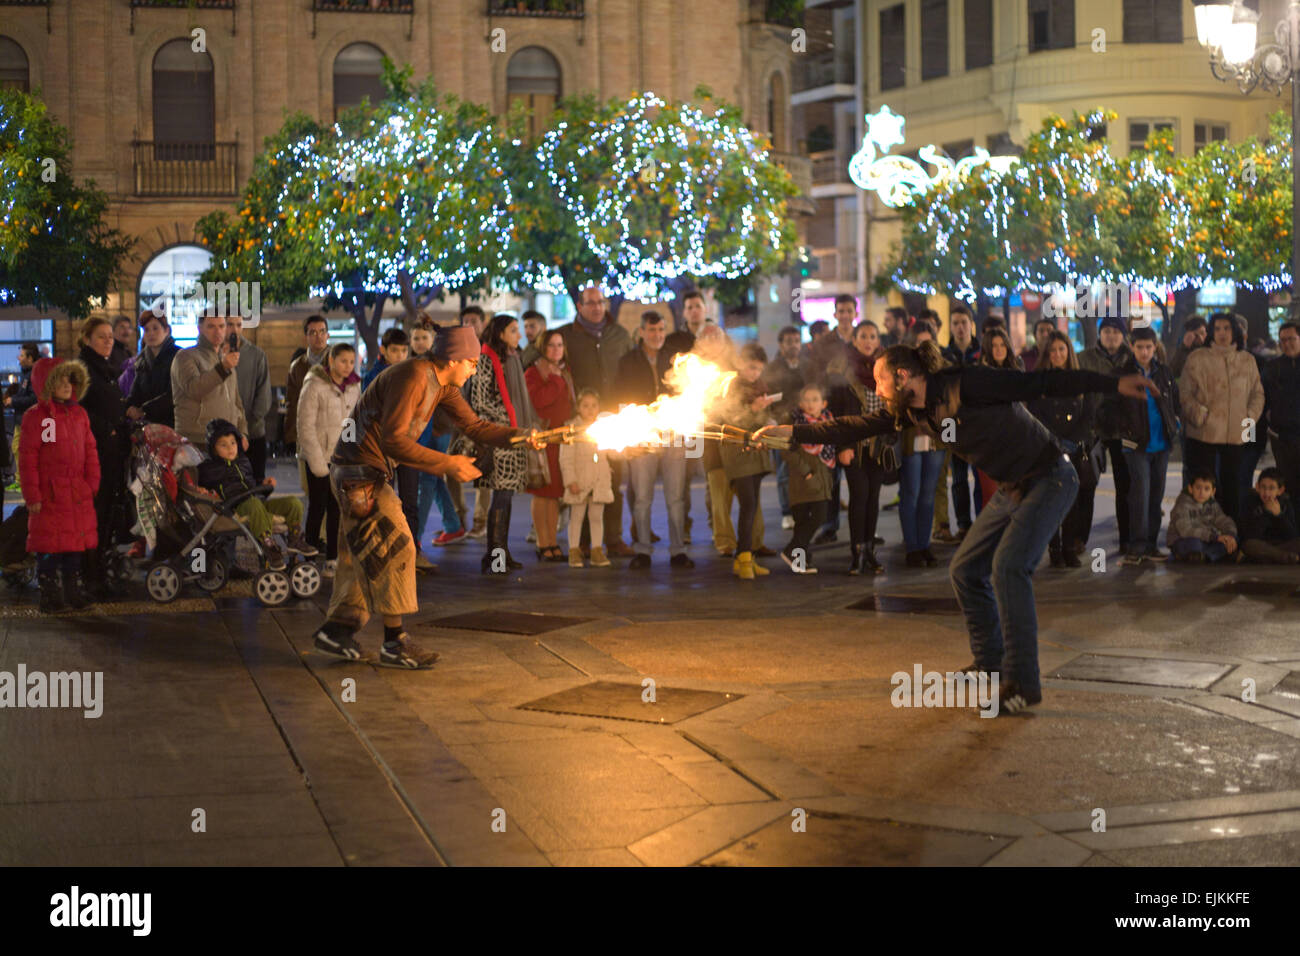 CORDOBA - JAN 4: A Street Entertainer spielen mit Feuer Fackel vor einer großen Menschenmenge, am 4. Januar 2015 in Cordoba Stockfoto